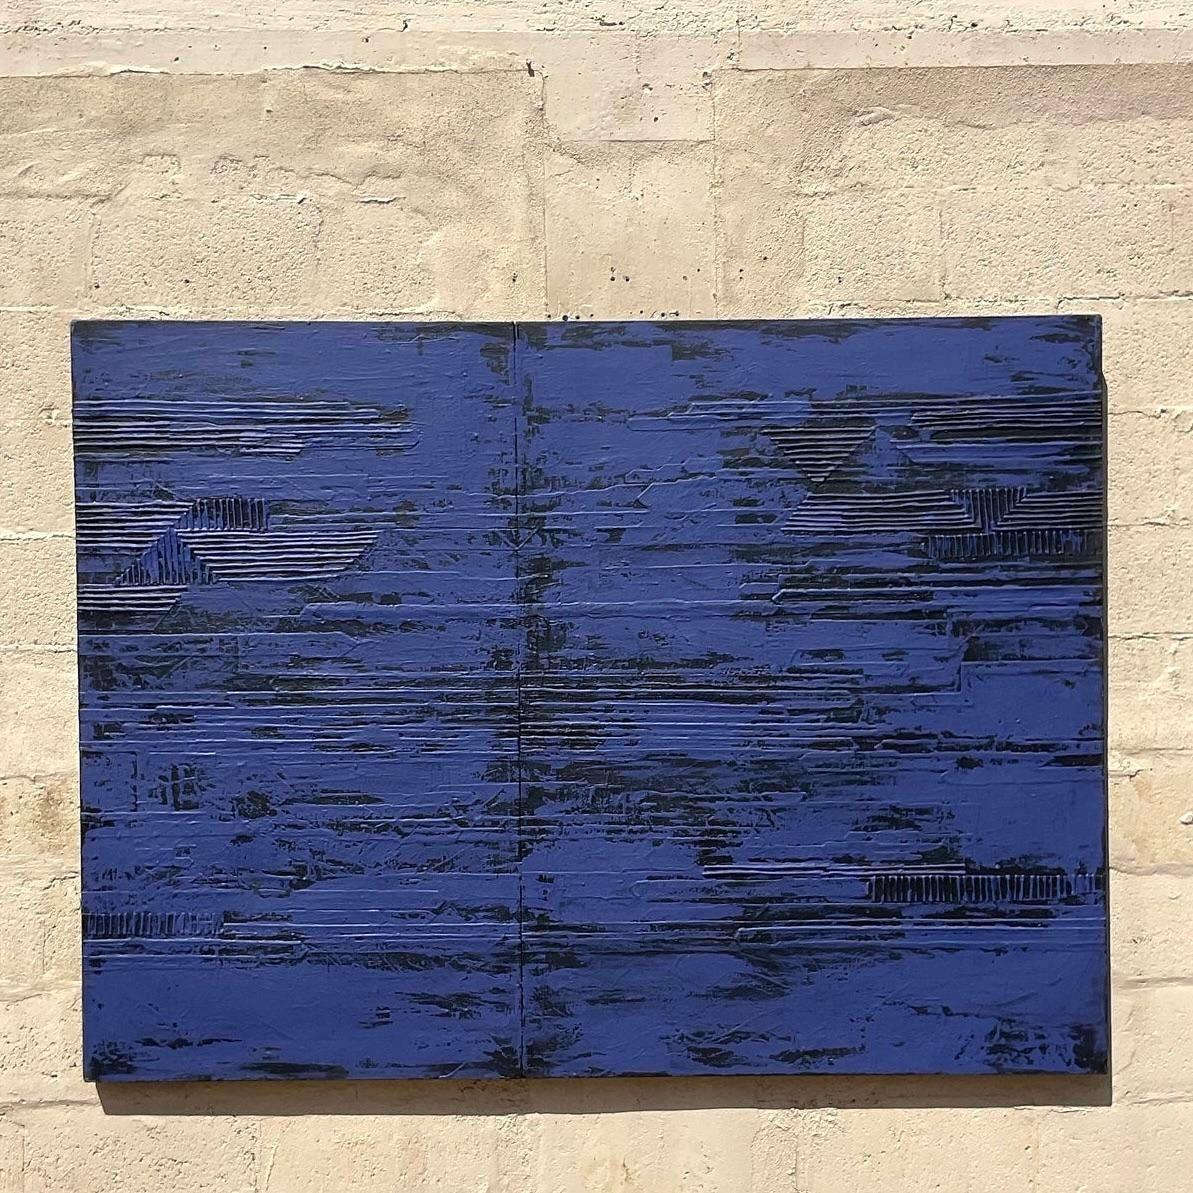 Dieses scheinbar minimalistische abstrakte Werk enthält in seinen Dimensionen versteckte Details. Das sanfte Marineblau und Schwarz sind eine subtile Ergänzung für einen Raum, aber bei näherem Hinsehen sind auf der Oberfläche lineare